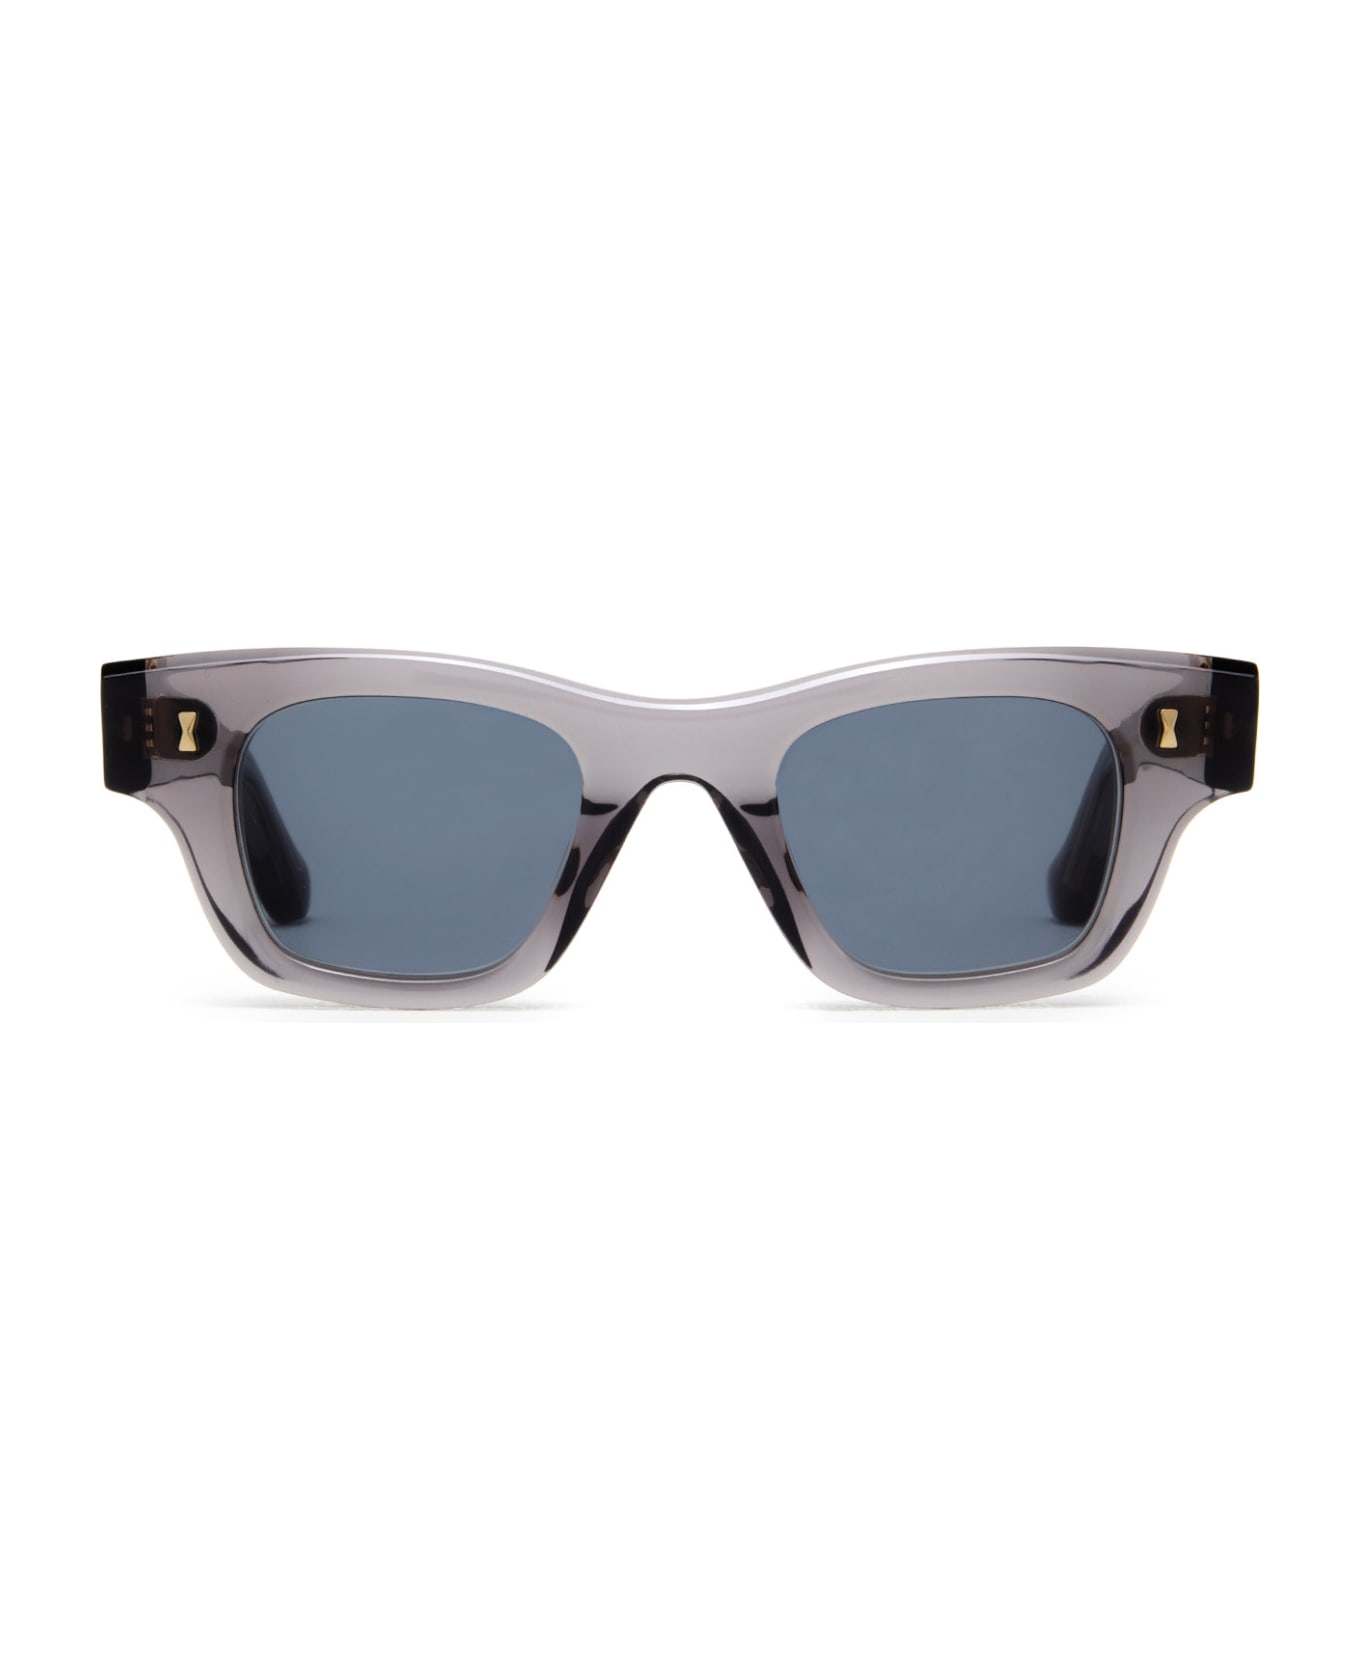 Cubitts Iceni Sun Smoke Grey Sunglasses - Smoke Grey サングラス